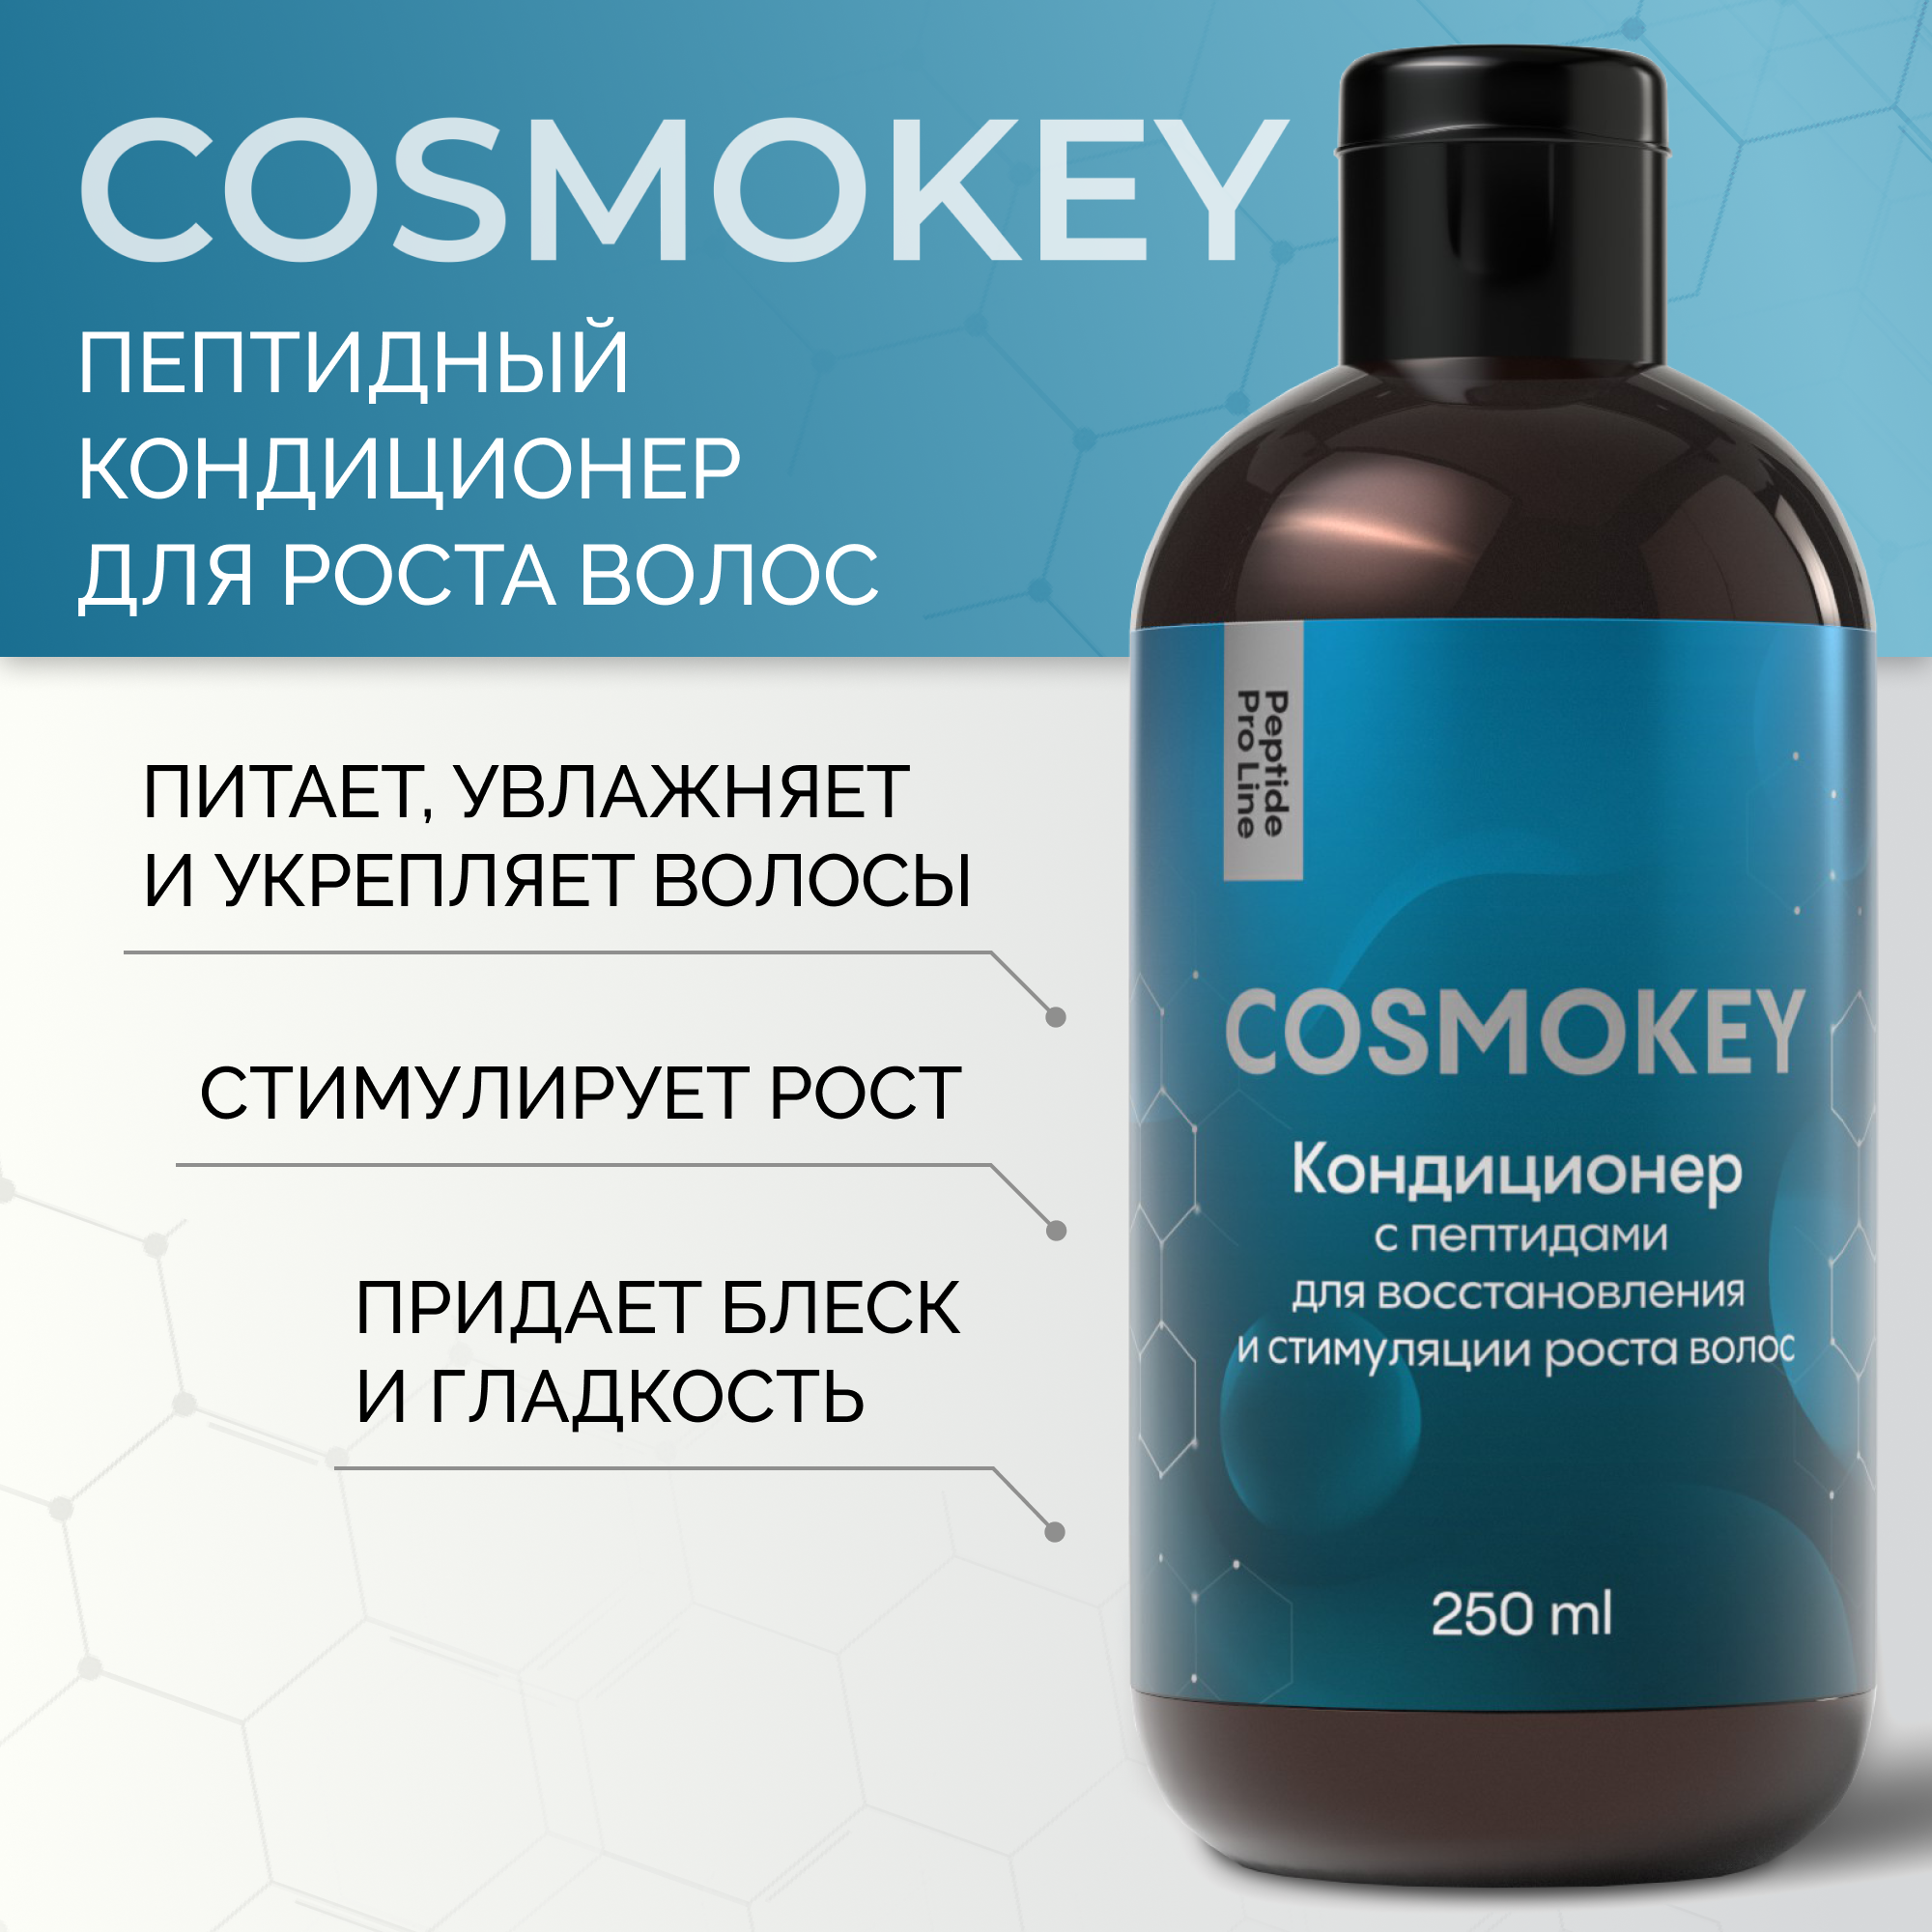 Кондиционер Cosmokey Космокей с пептидами для восстановления роста волос 250 мл кондиционер cosmokey космокей с пептидами для восстановления роста волос 250 мл